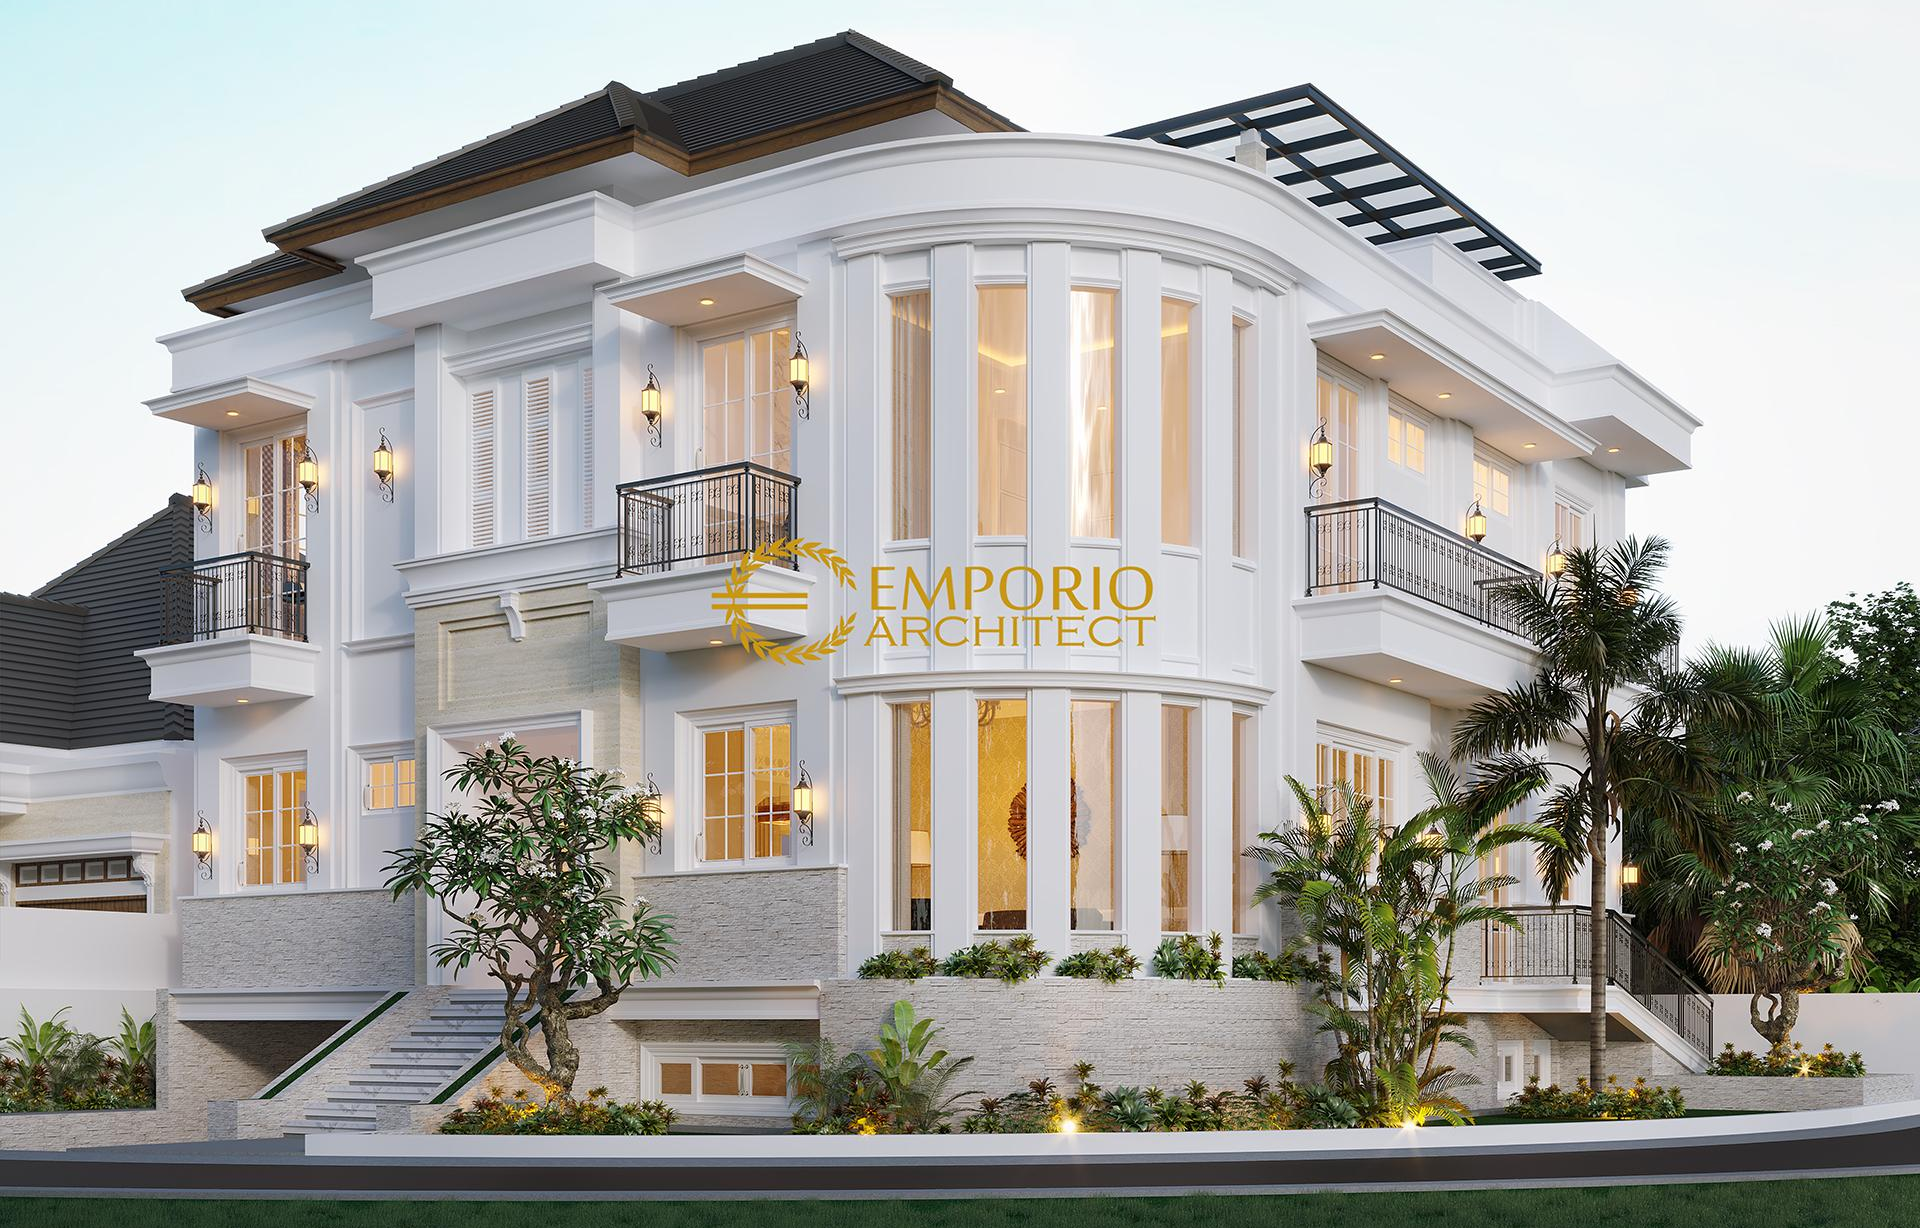 Semarangbisniscom Solusi Terbaik Jasa Desain Rumah 2020 Di Emporio Architect